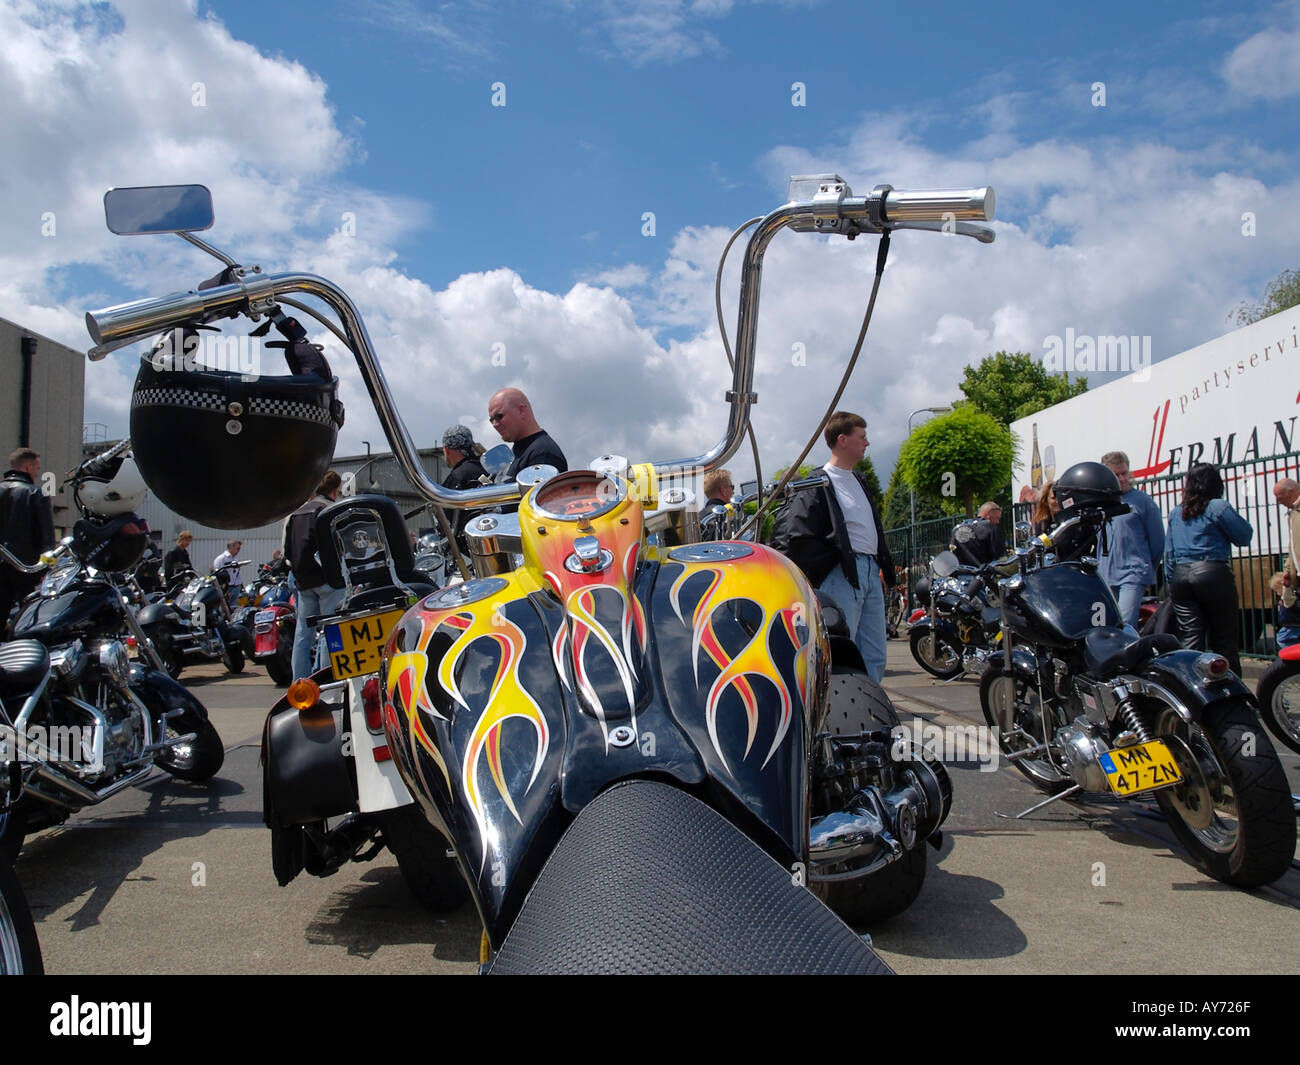 Personalizados motocicleta Harley Davidson con llama pintura y súper alta  apehanger manillares fotografiados en un evento Fotografía de stock - Alamy